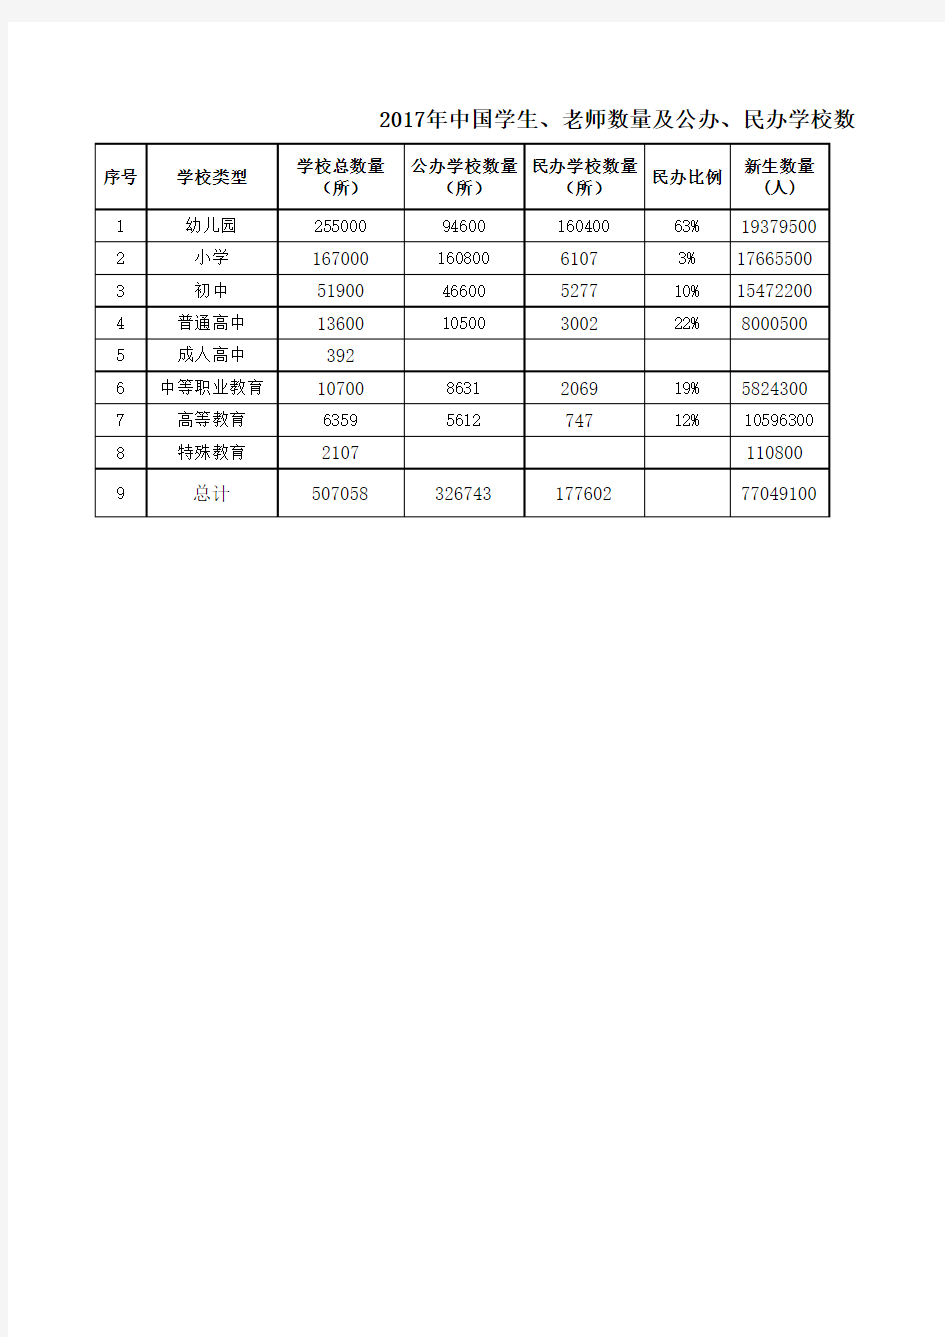 2017年中国学生、老师数量及公办、民办学校数量统计表